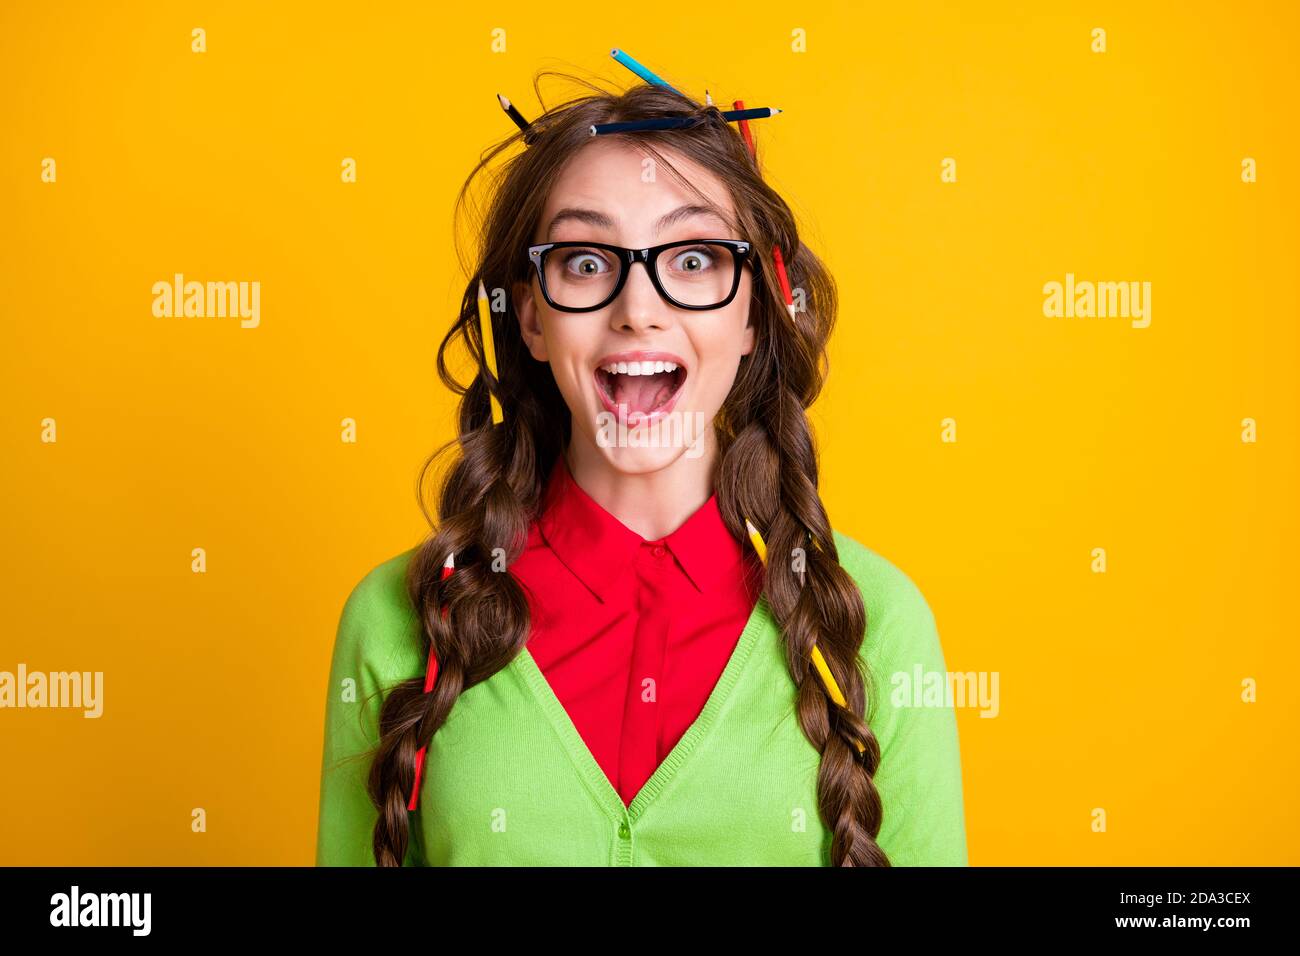 Foto von Nerd Teenager Mädchen mit Bleistift chaotisch Frisur aufgeregt  Tragen Sie grüne Kleidung isoliert Glanz Farbe Hintergrund Stockfotografie  - Alamy